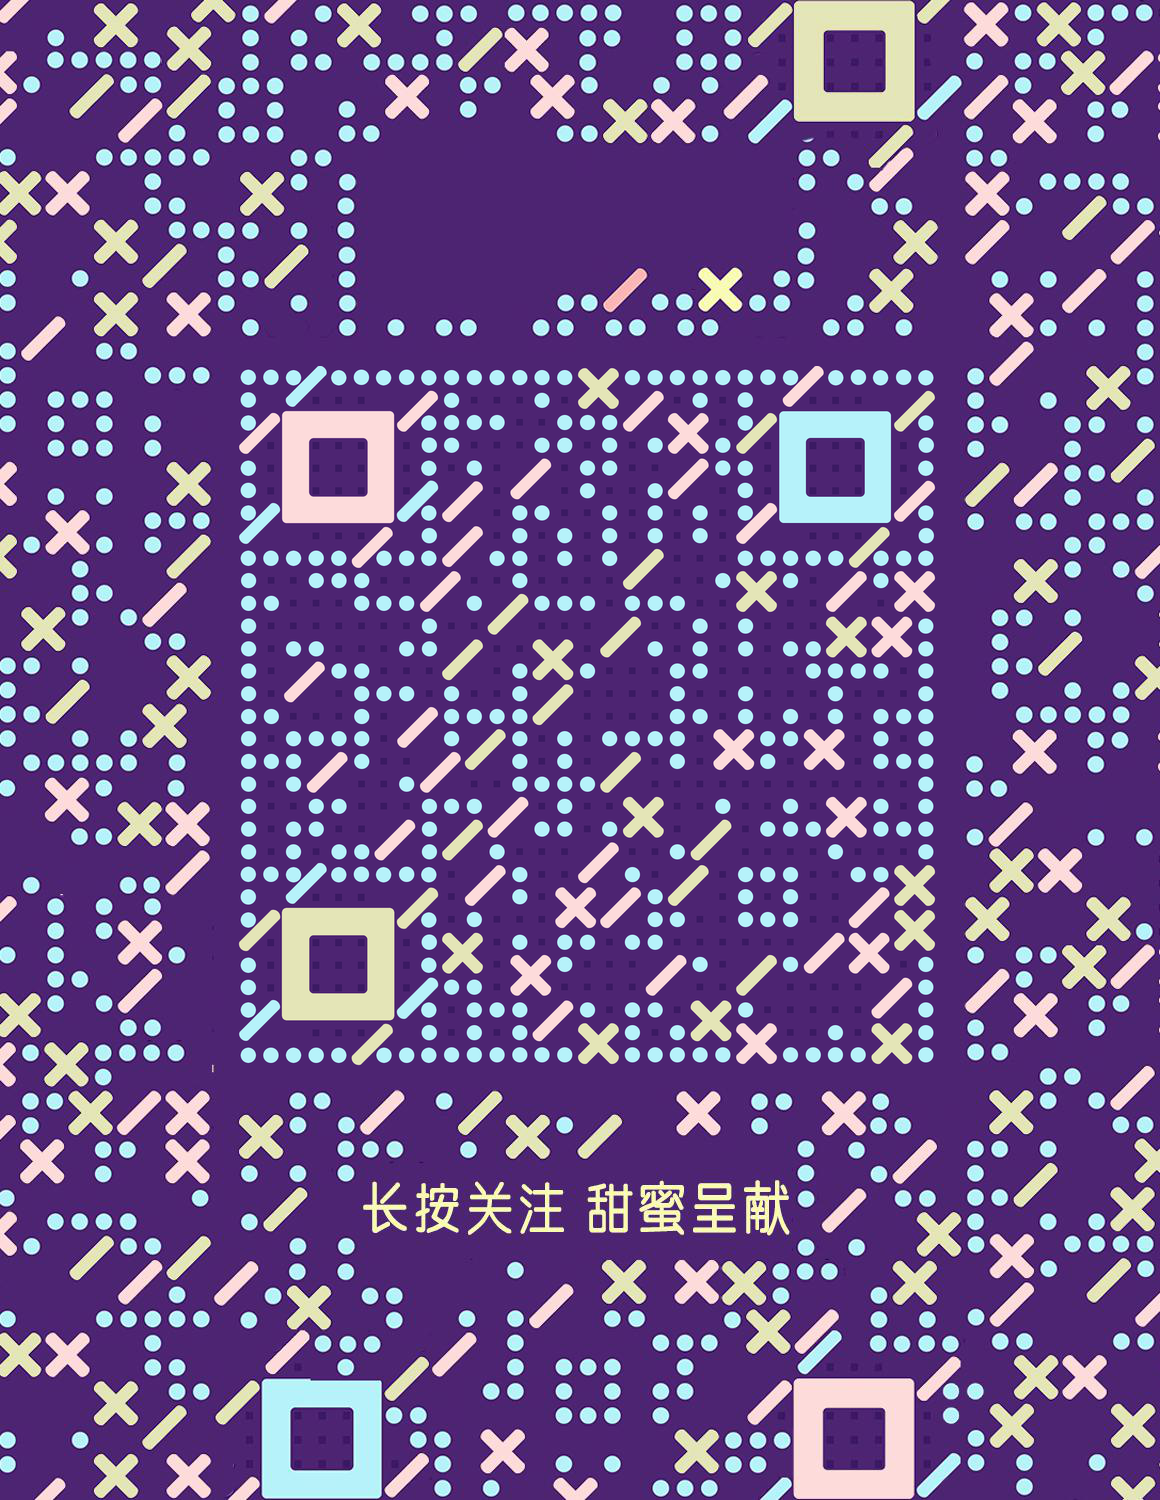 糖果格子紫色反白花纹二维码生成器-平面静态-微信名片